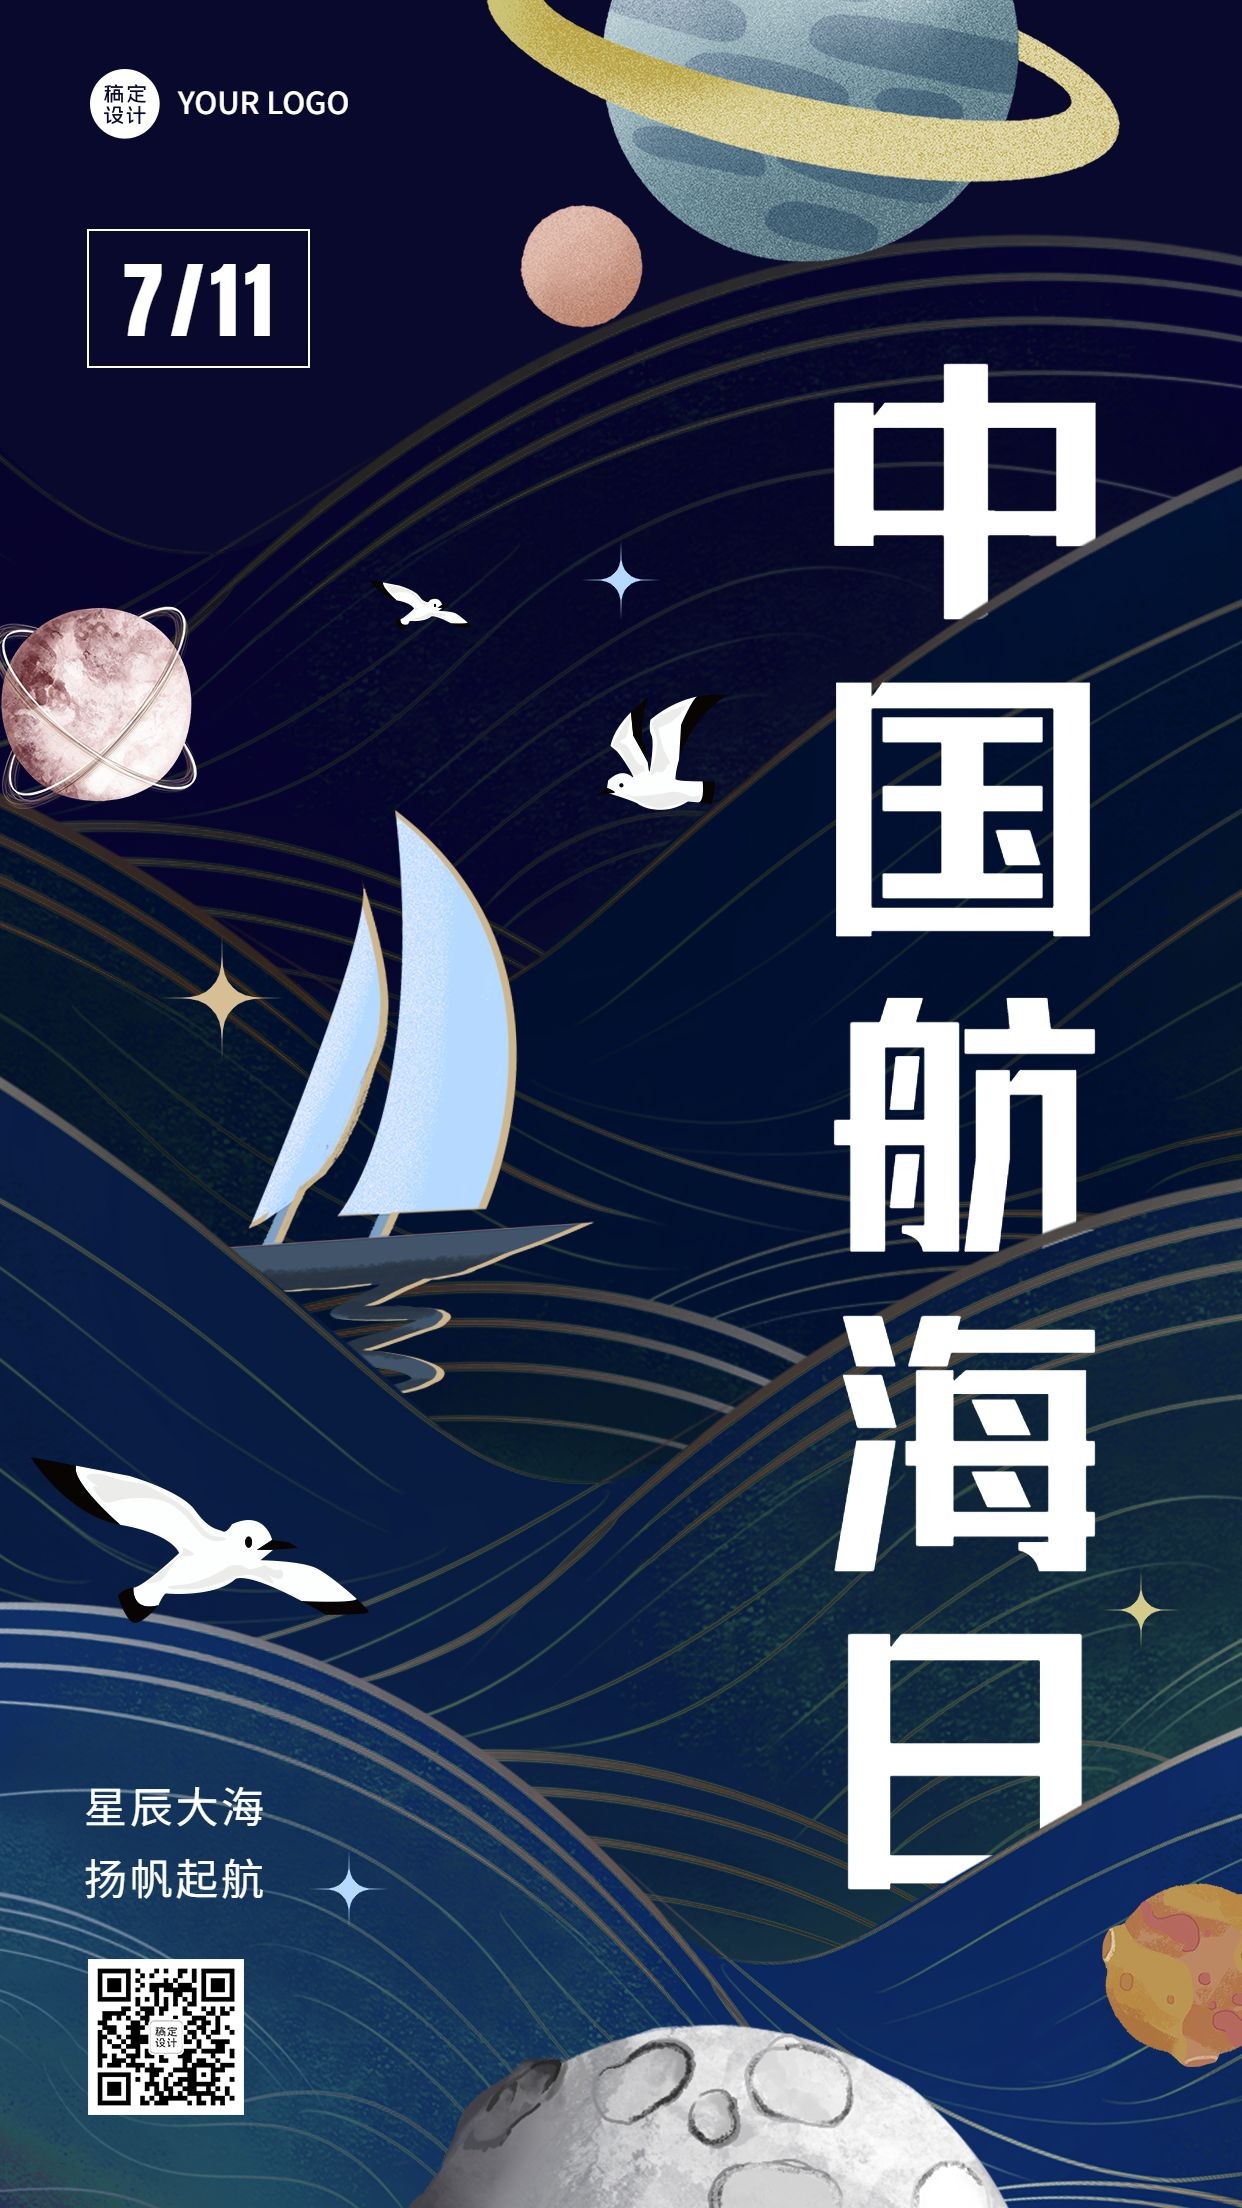 中国航海日节日宣传插画手机海报预览效果